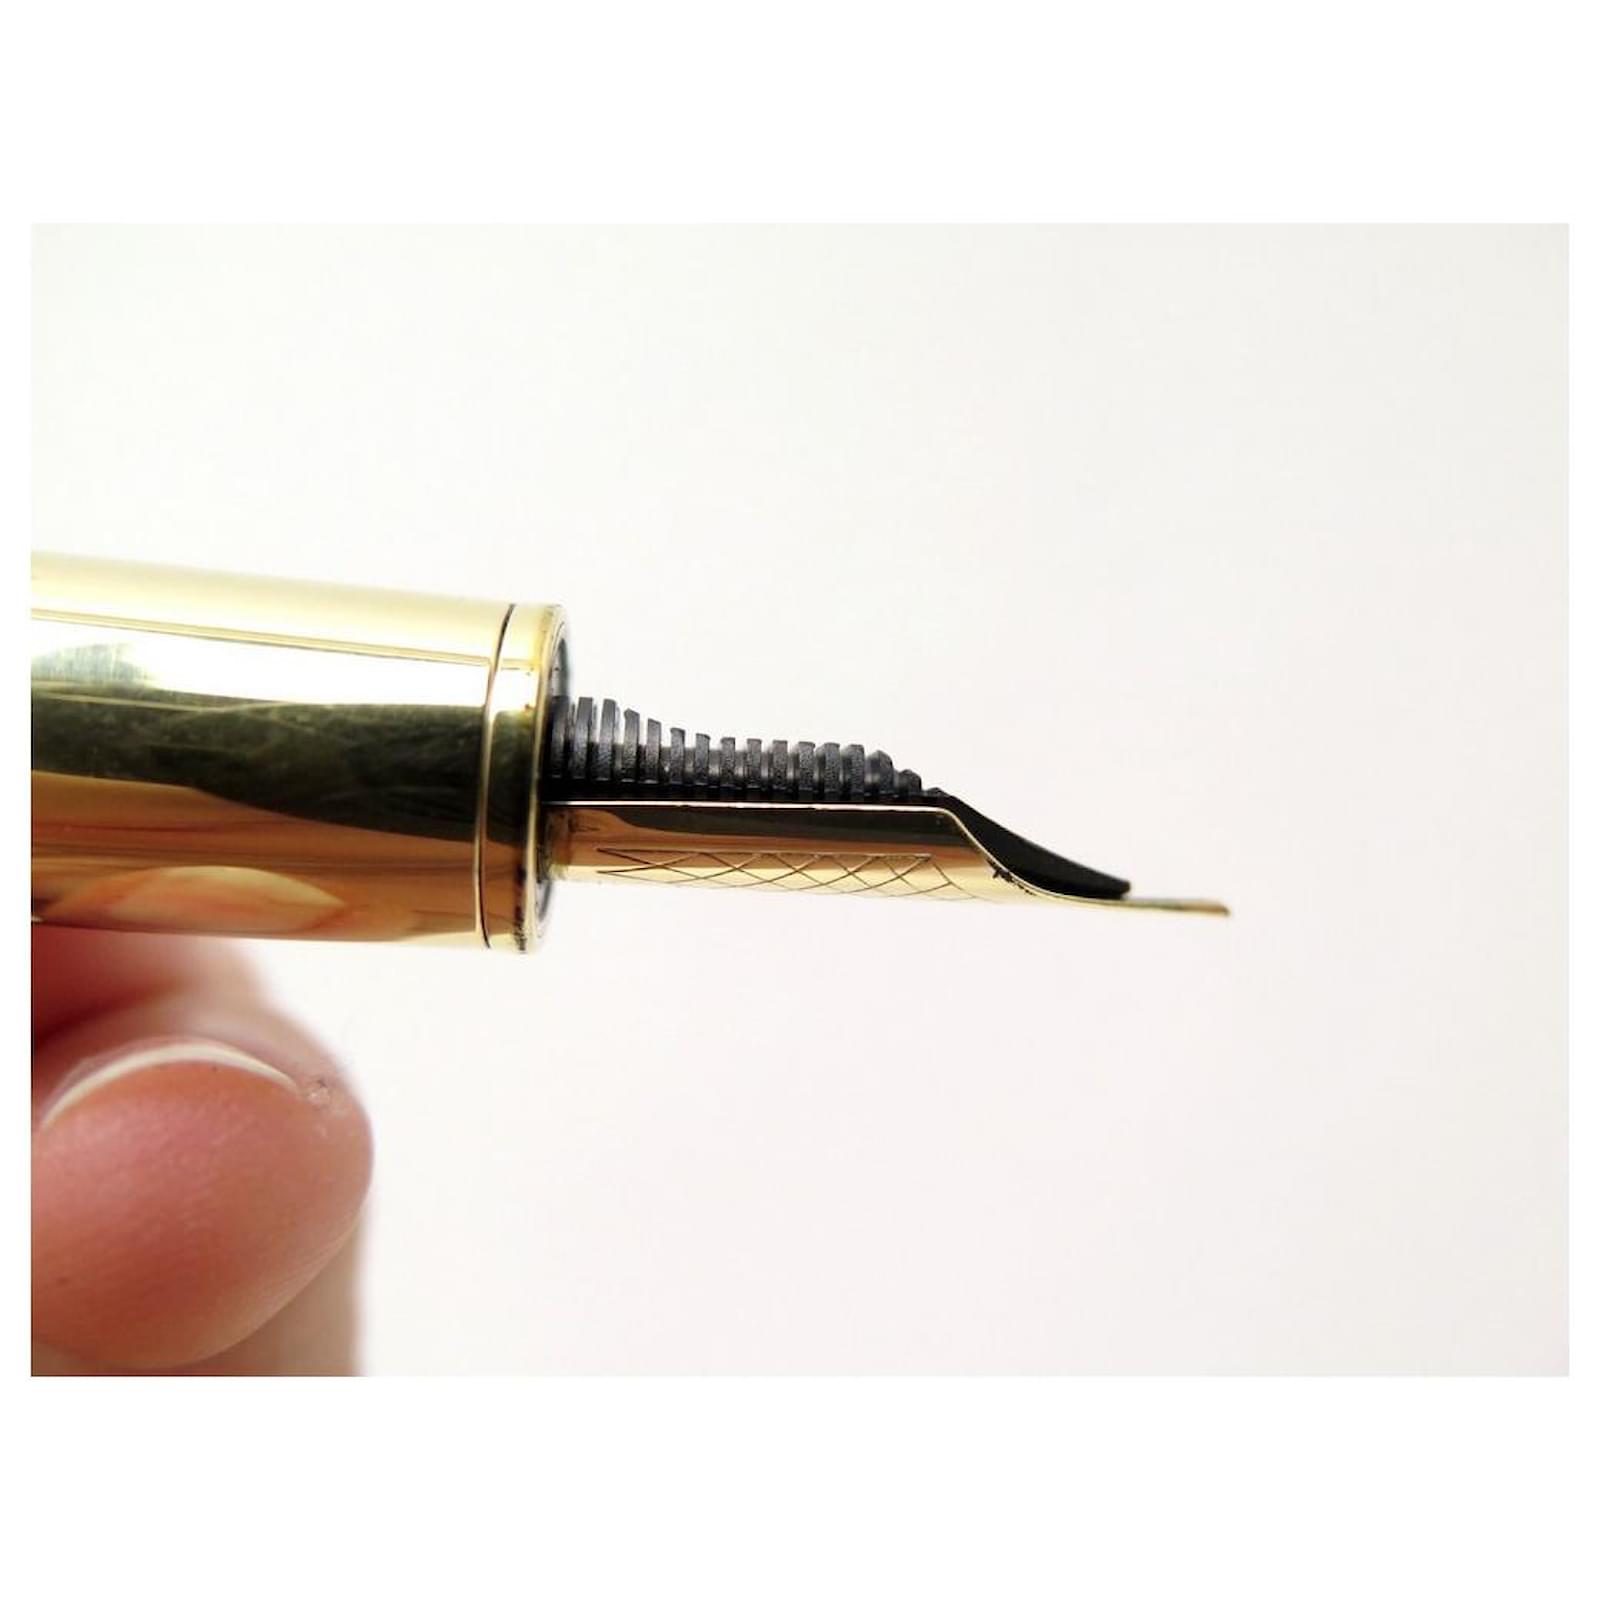 A Louis Vuitton Cargo Exotic brown leather fountain pen, gilt clip